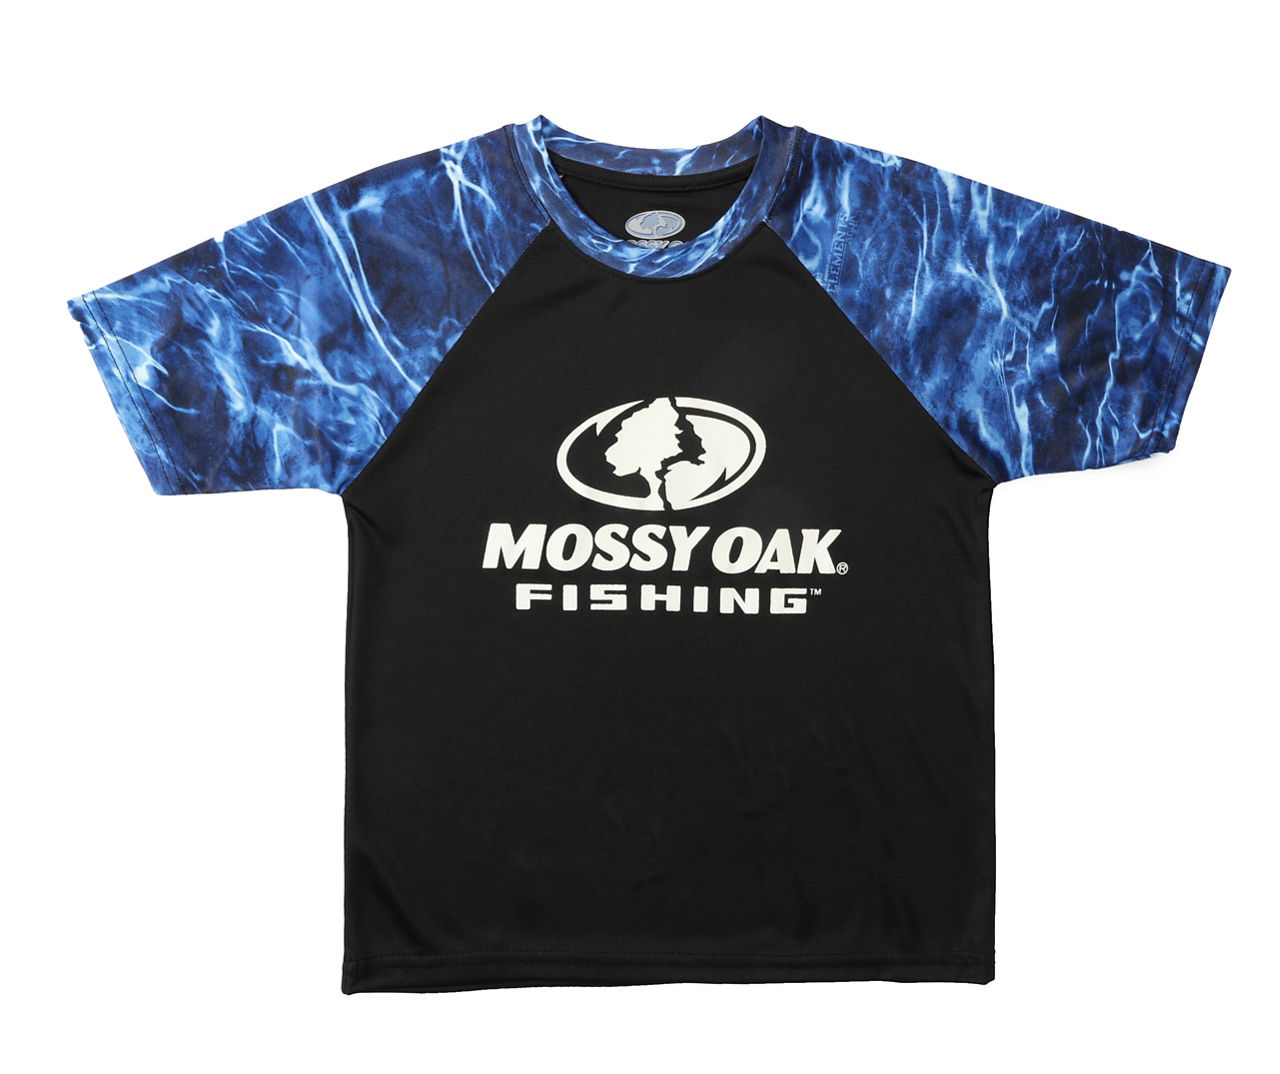 Mossy Oak Men's Size L Black & Blue Tie-Dye Logo Performance Raglan Tee